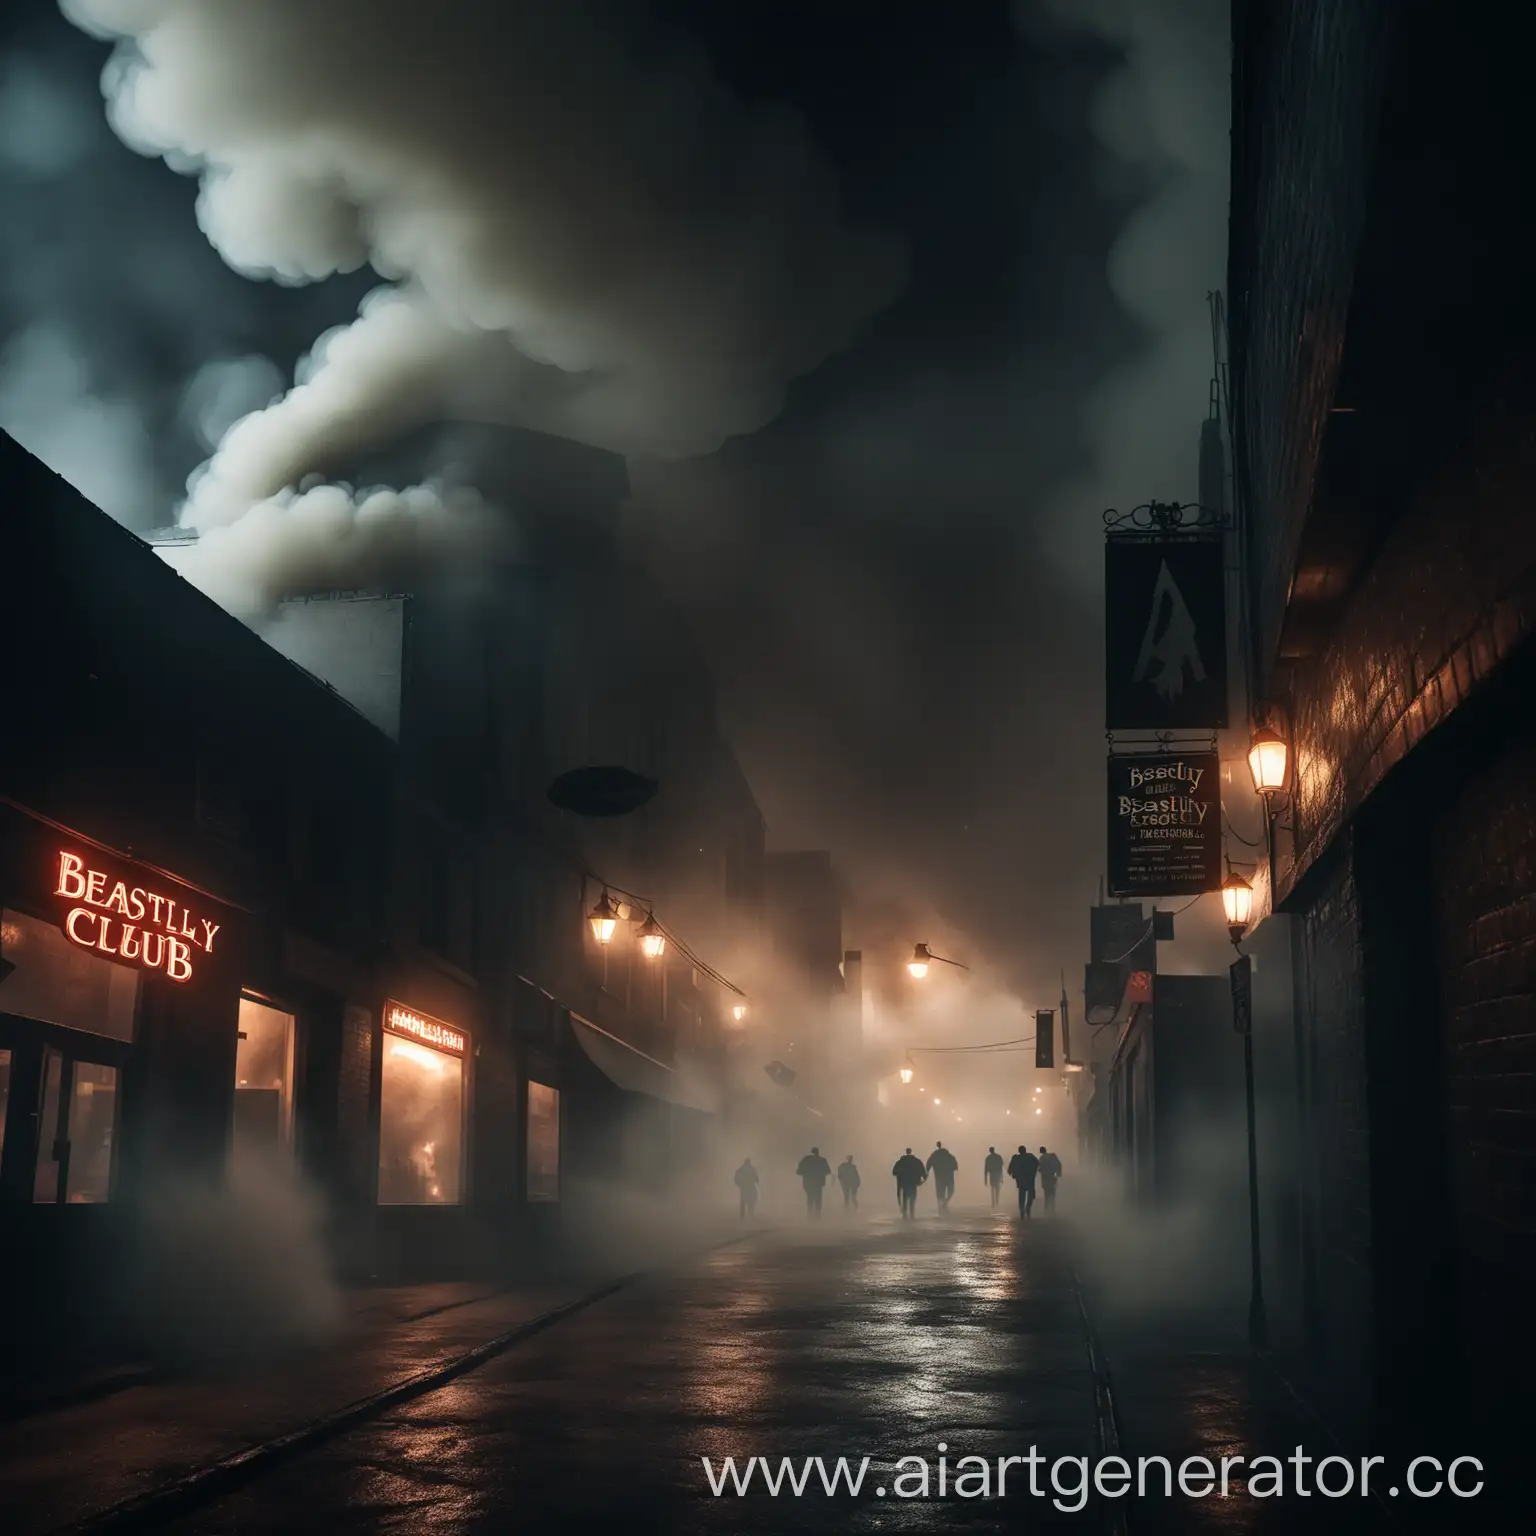 тёмная улица, звериный бар-клуб окутывается плотным дымом, напрягающая атмосфера